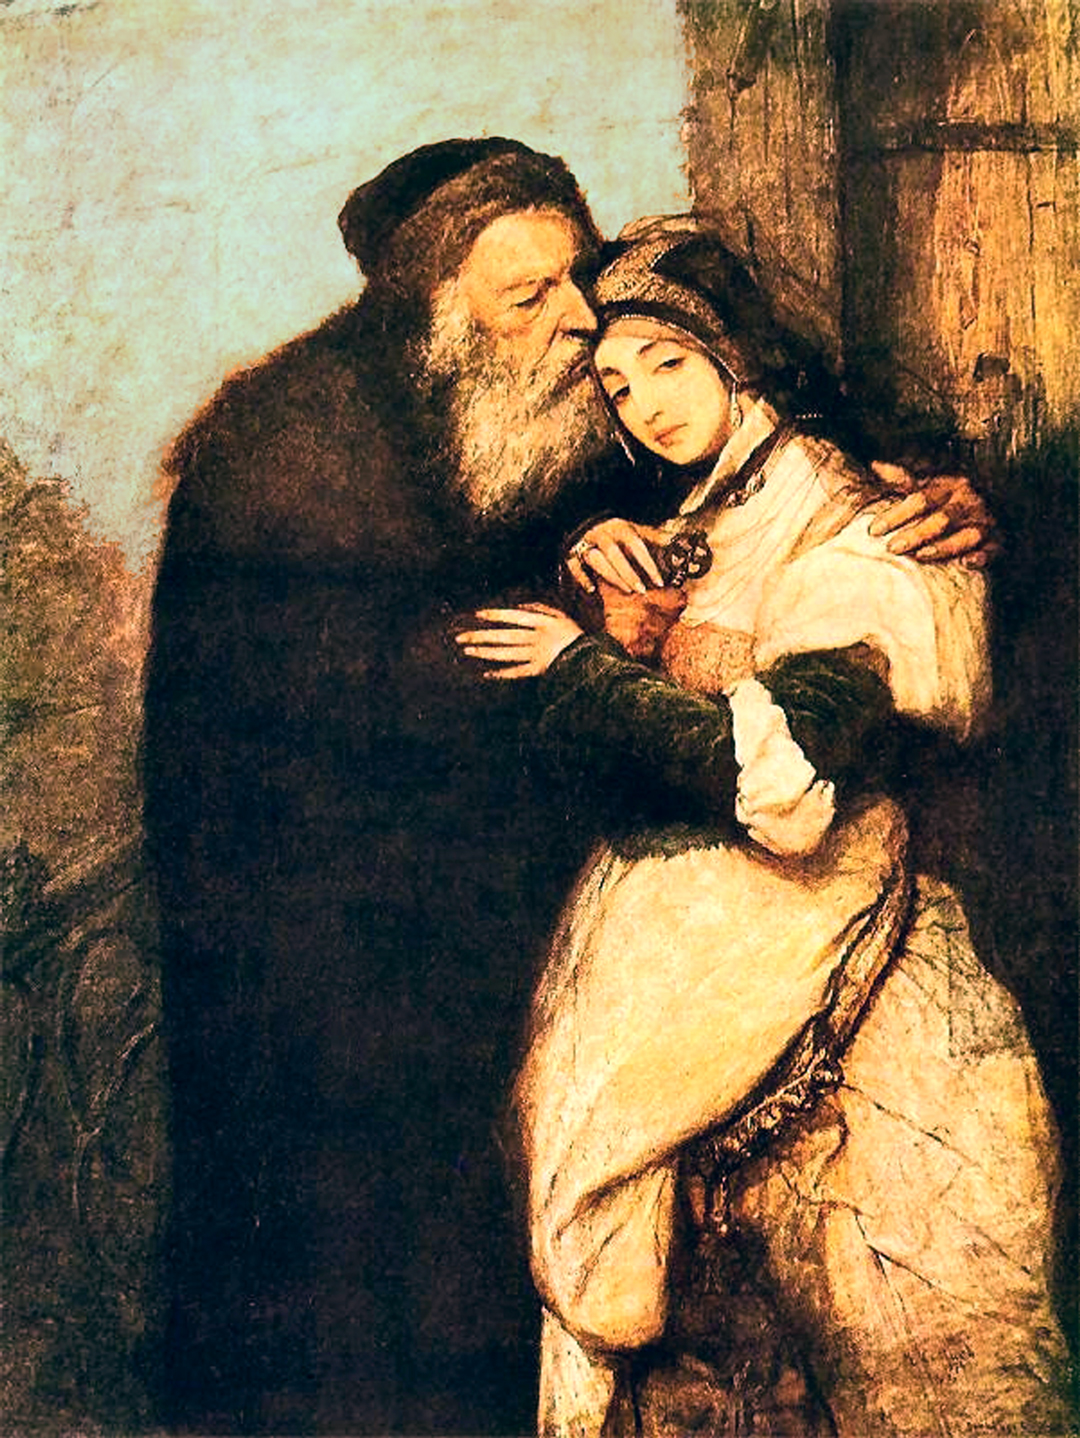 夏洛克和潔西卡 by Maurycy Gottlieb - 1876 - 166.5 × 109.5 cm 